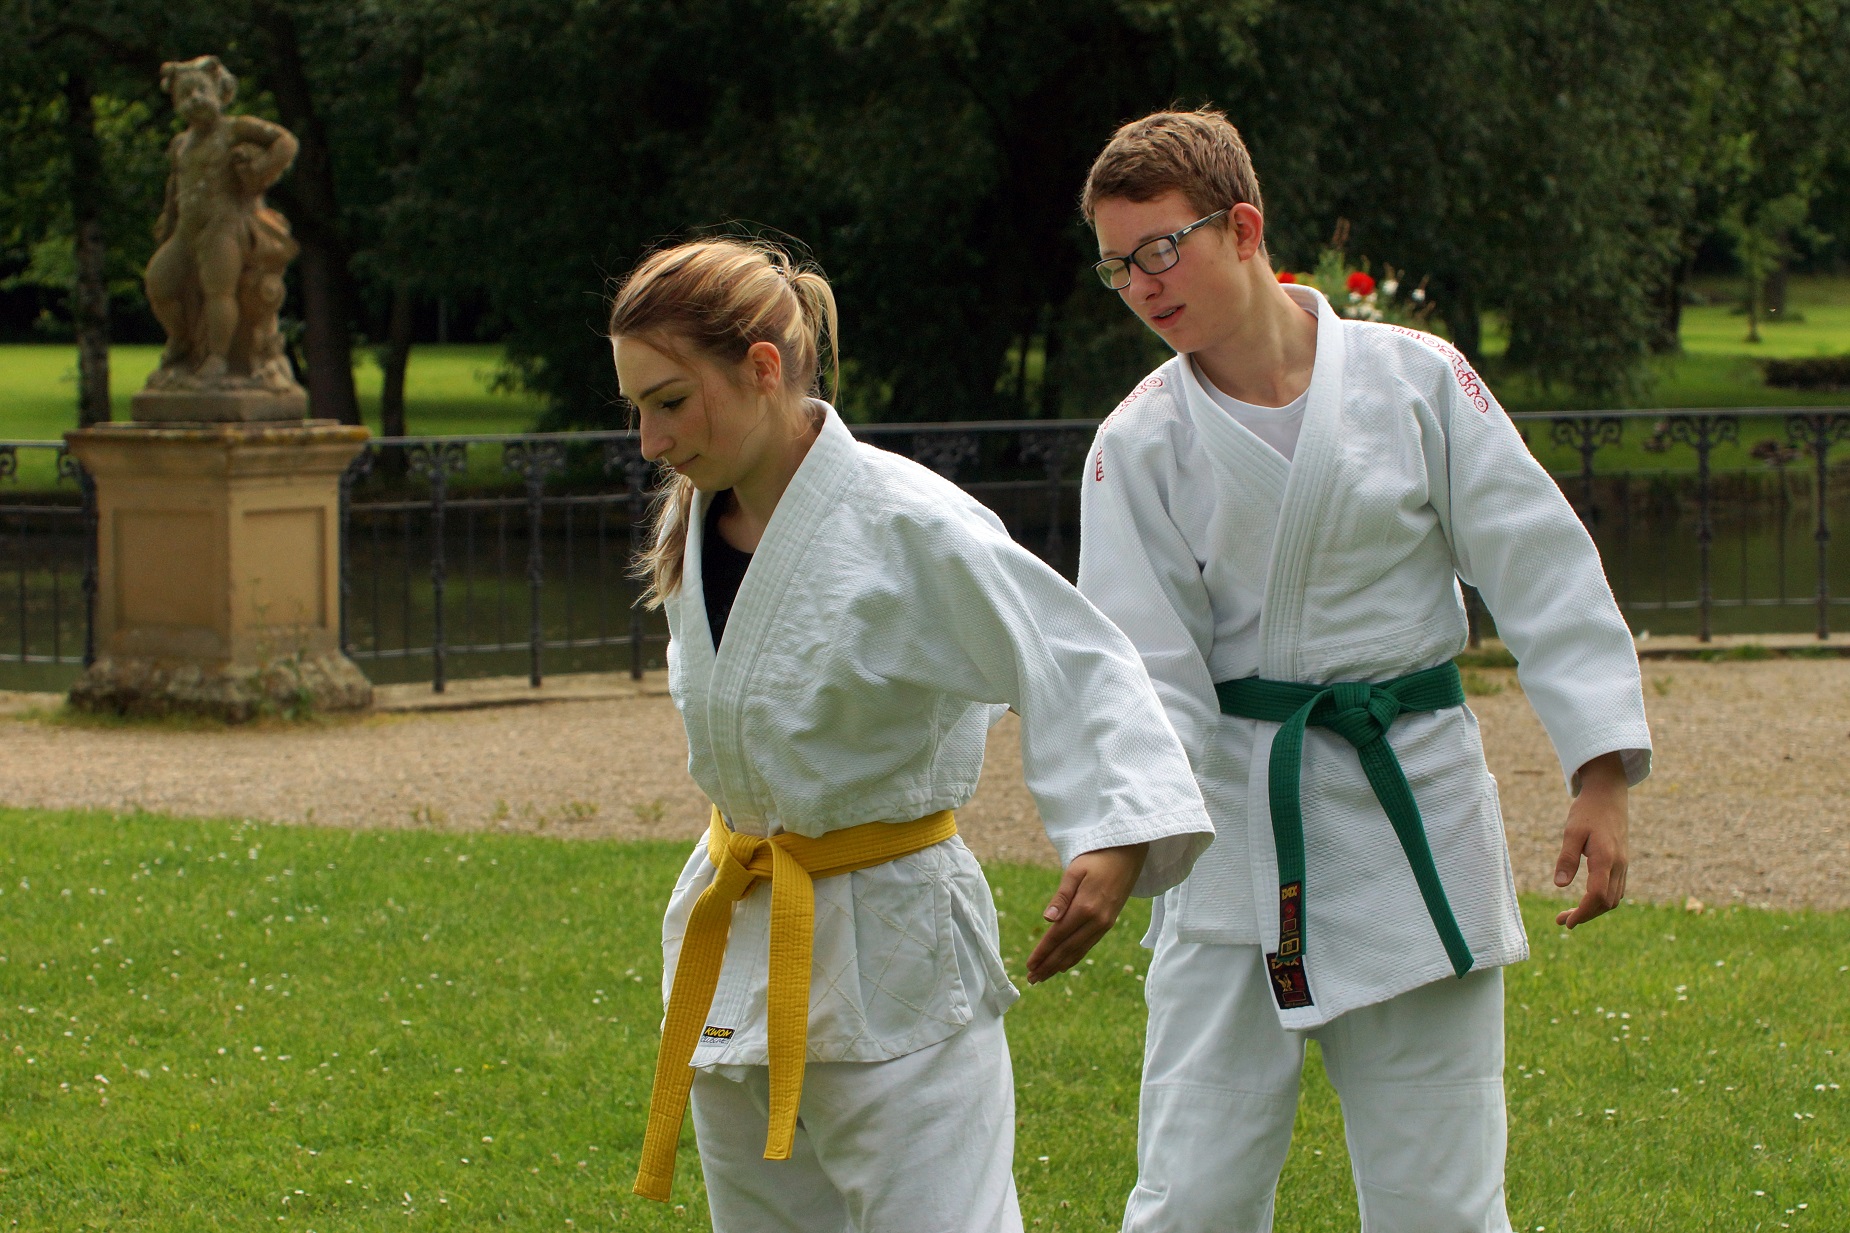 Bild: Zwei Judokas, im Judoanzug stehen im Schlosspark und machen eine Übung.